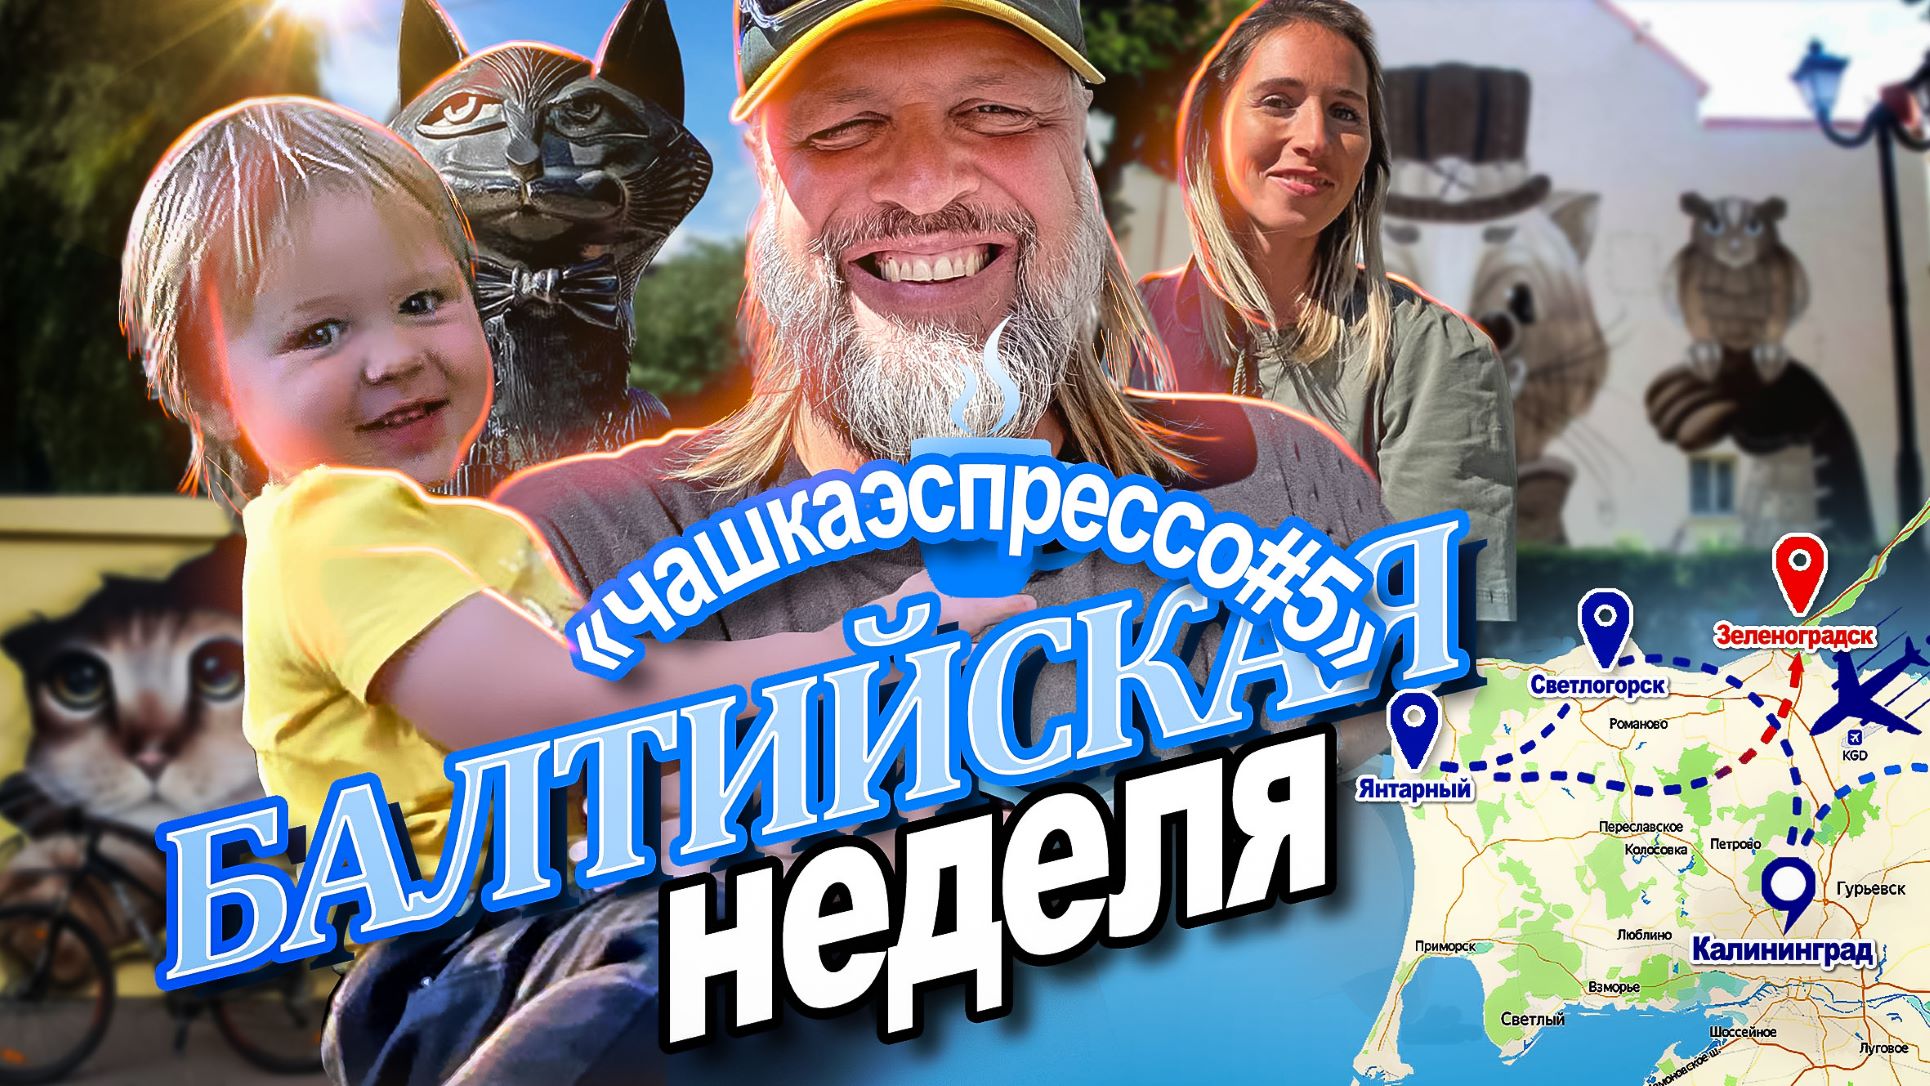 Зеленоградск - город котов. ОСТОРОЖНО ЕДА и шикарное настроение